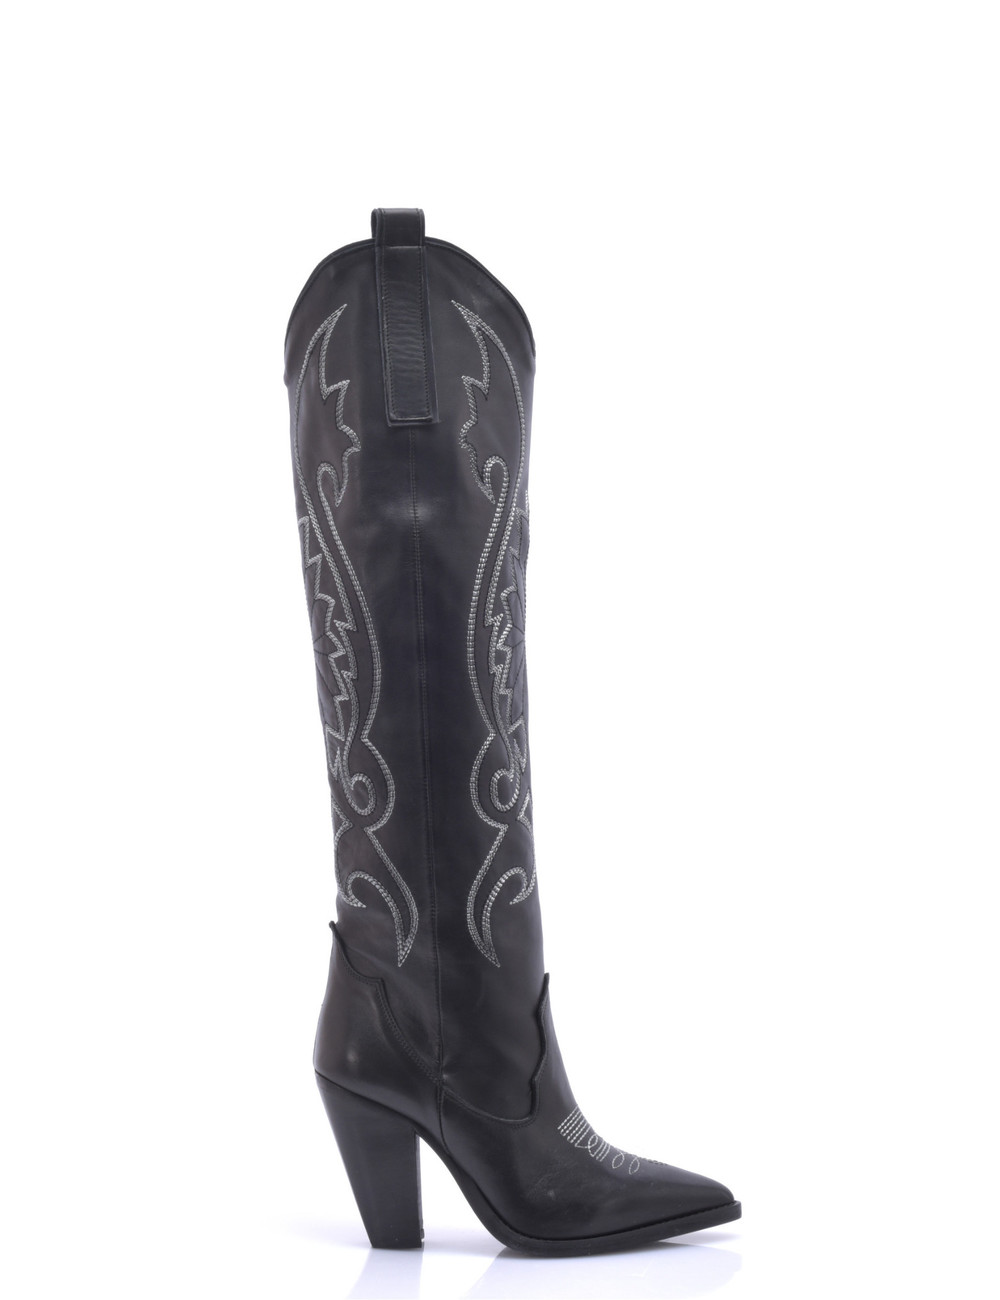 Sanctum Leather Cardinale high heel cowboy boots